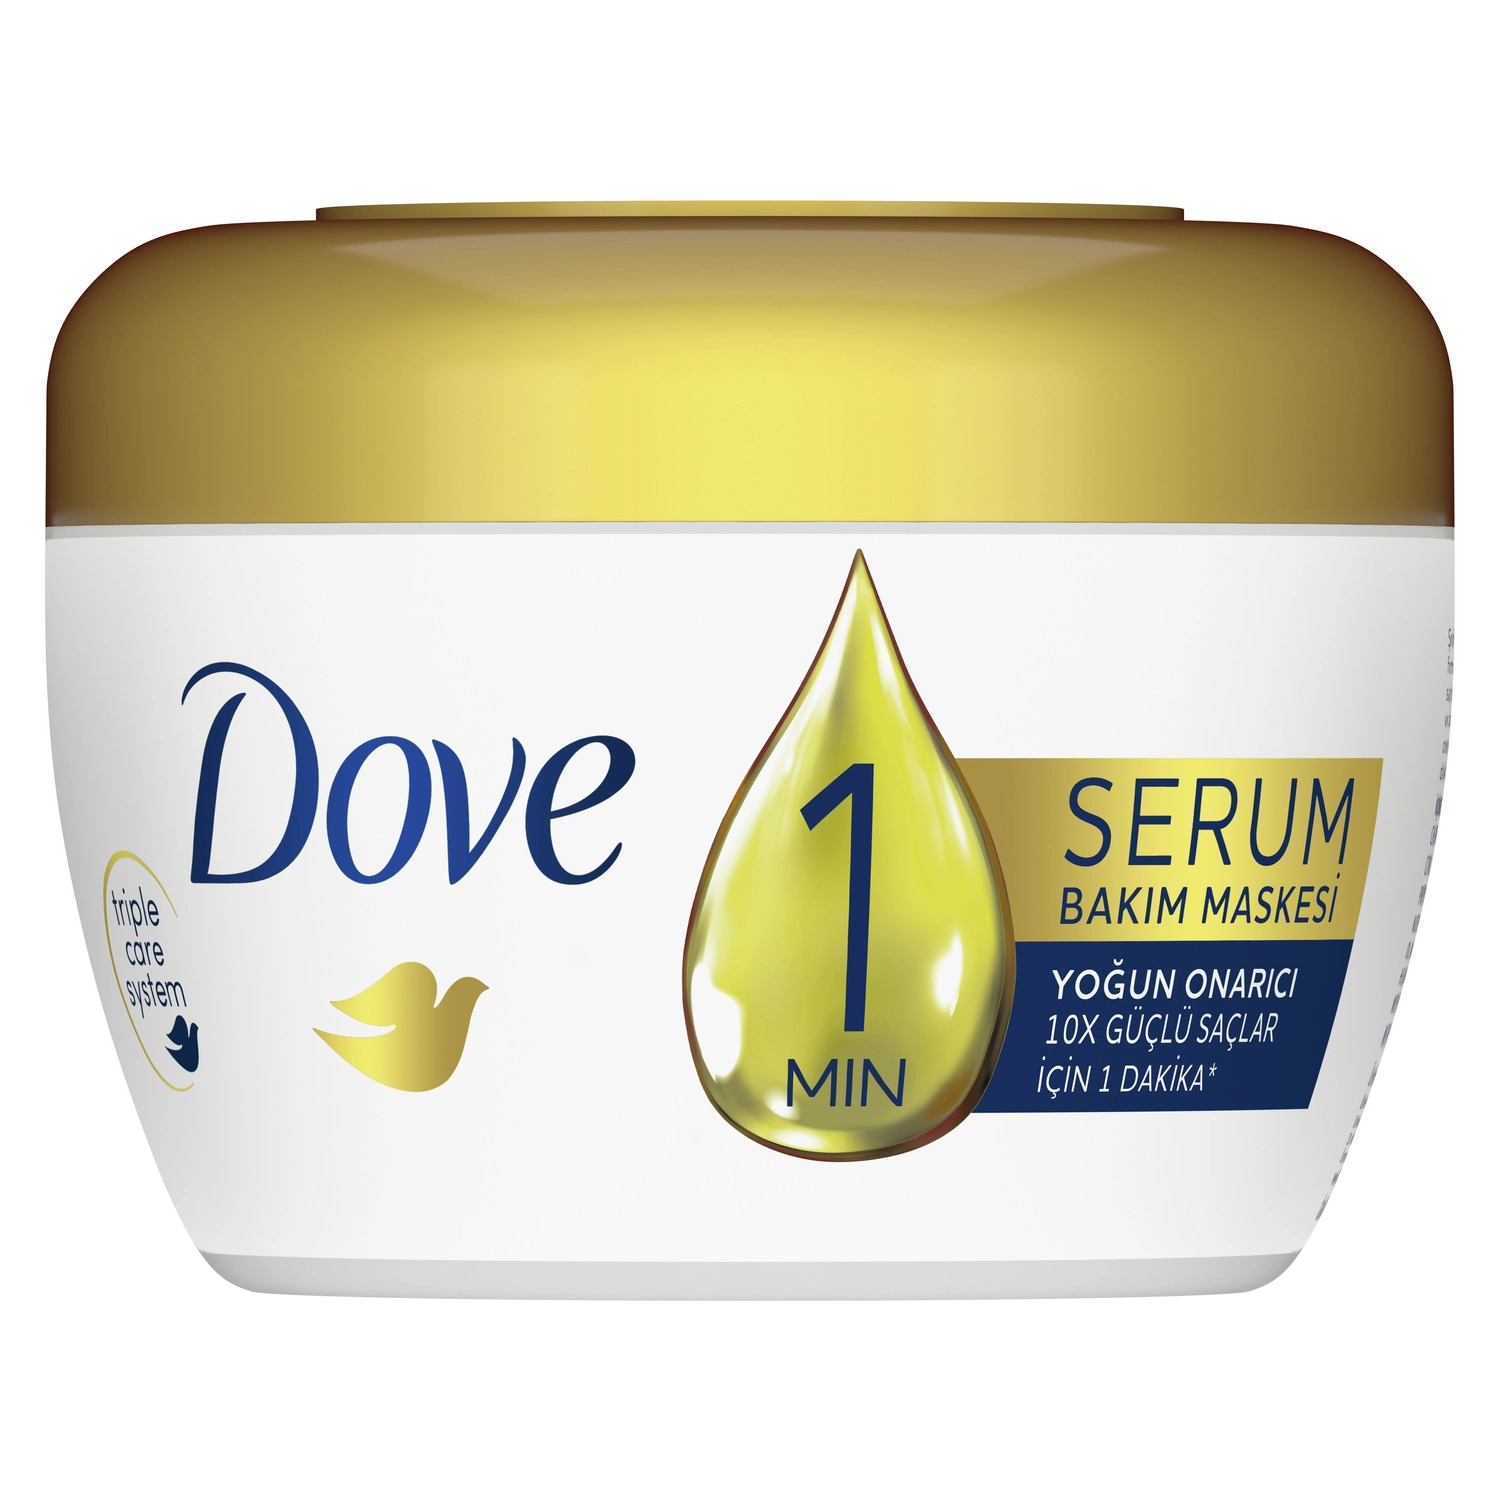 Dove 1 Minute Serum Saç Bakım Maskesi Yoğun Onarıcı 160 ml - Saç Bakım Güzellik